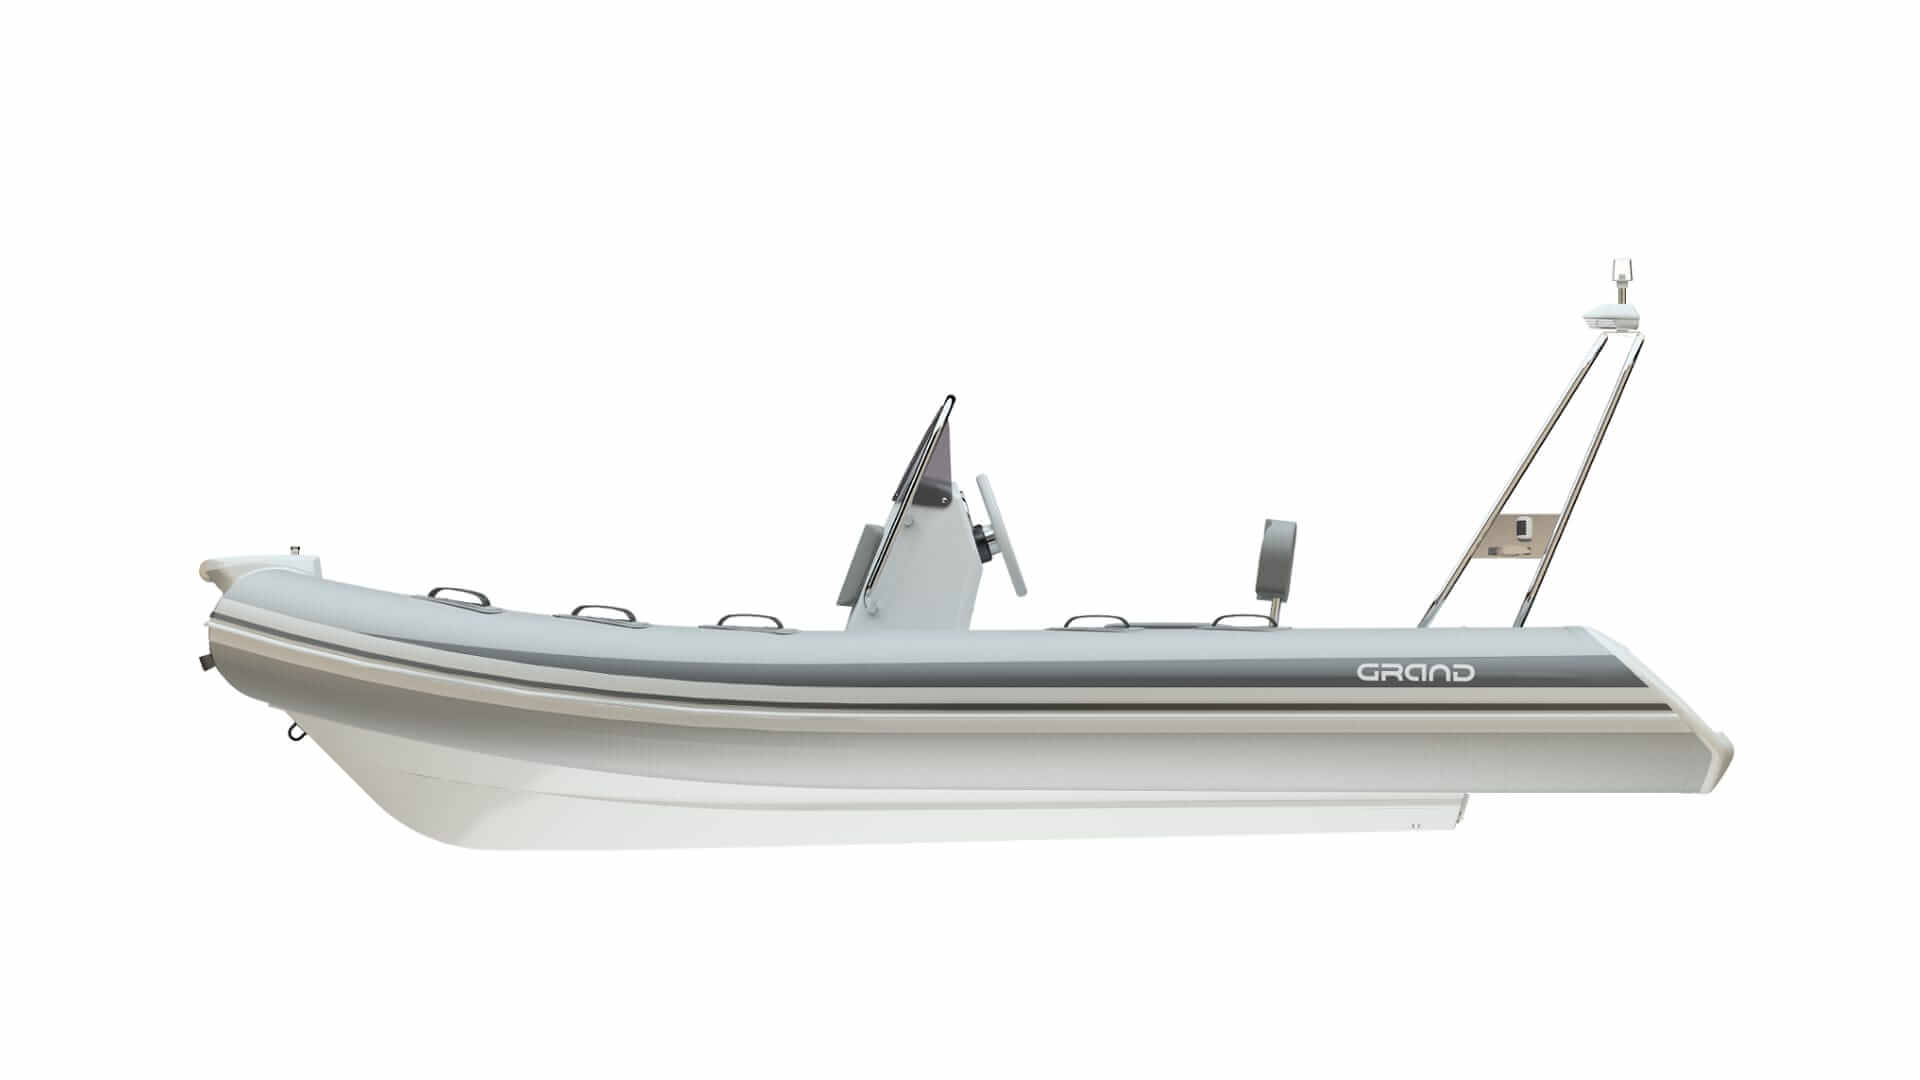 Надувная лодка GRAND Silver Line S420, GRAND Silver Line S420NL, GRAND Silver Line S420NLF, GRAND S520NL, GRAND S520NLF, S520NL, S520NLF, Надувная лодка GRAND, Надувная лодка ГРАНД, Надувная лодка с жестким дном, RIB, Rigid Inflatable Boats